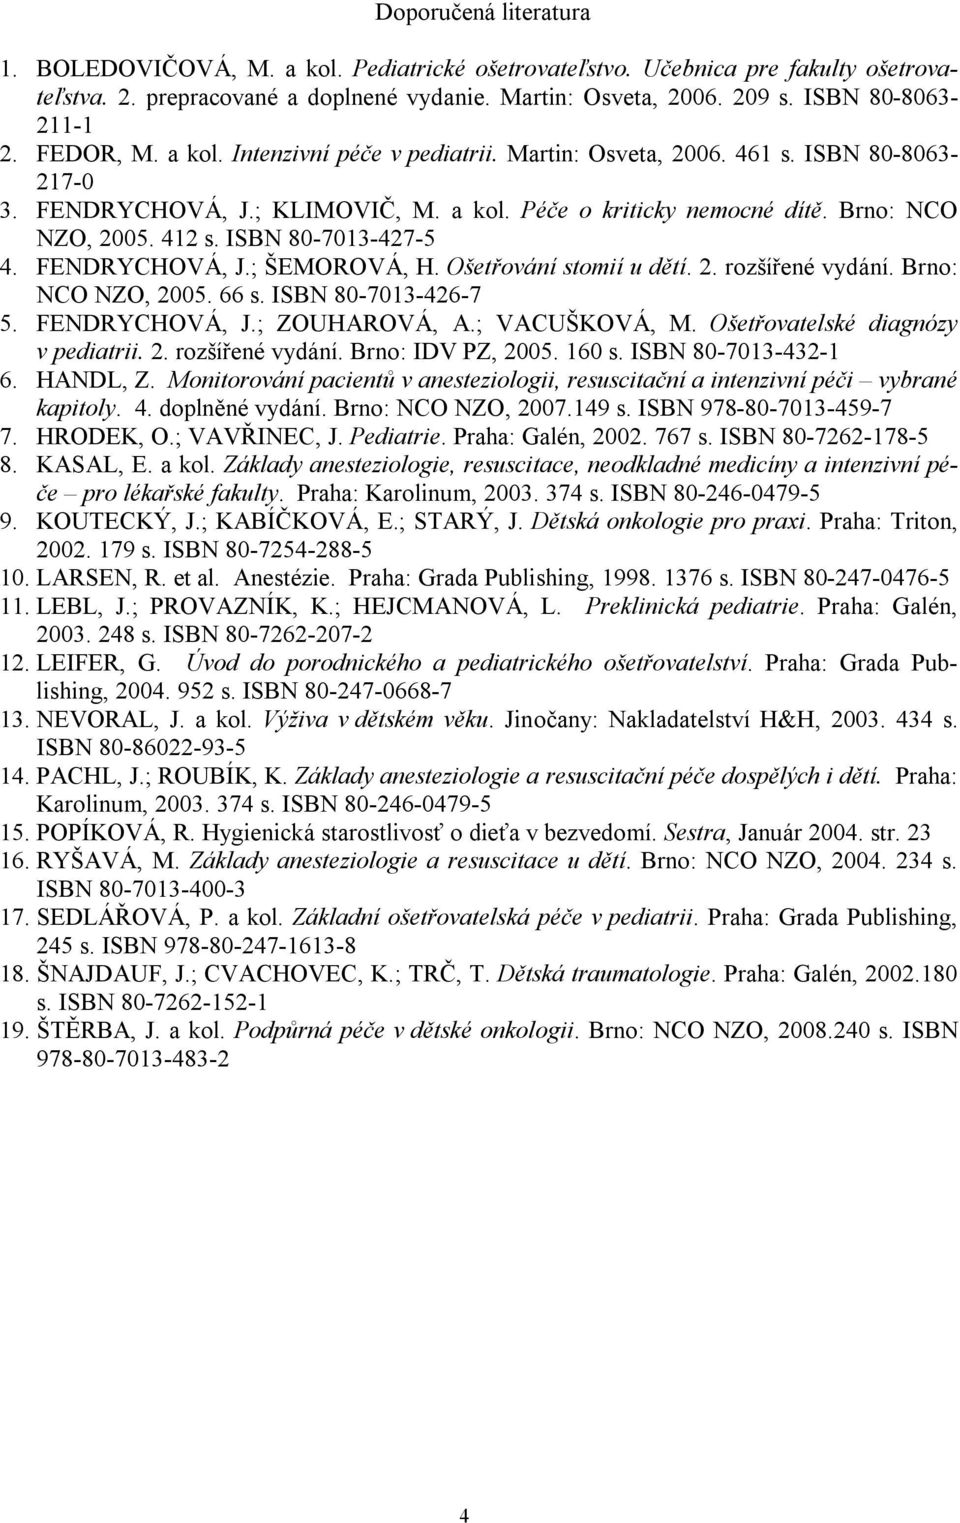 Brno: NCO NZO, 2005. 412 s. ISBN 80-7013-427-5 4. FENDRYCHOVÁ, J.; ŠEMOROVÁ, H. Ošetřování stomií u dětí. 2. rozšířené vydání. Brno: NCO NZO, 2005. 66 s. ISBN 80-7013-426-7 5. FENDRYCHOVÁ, J.; ZOUHAROVÁ, A.